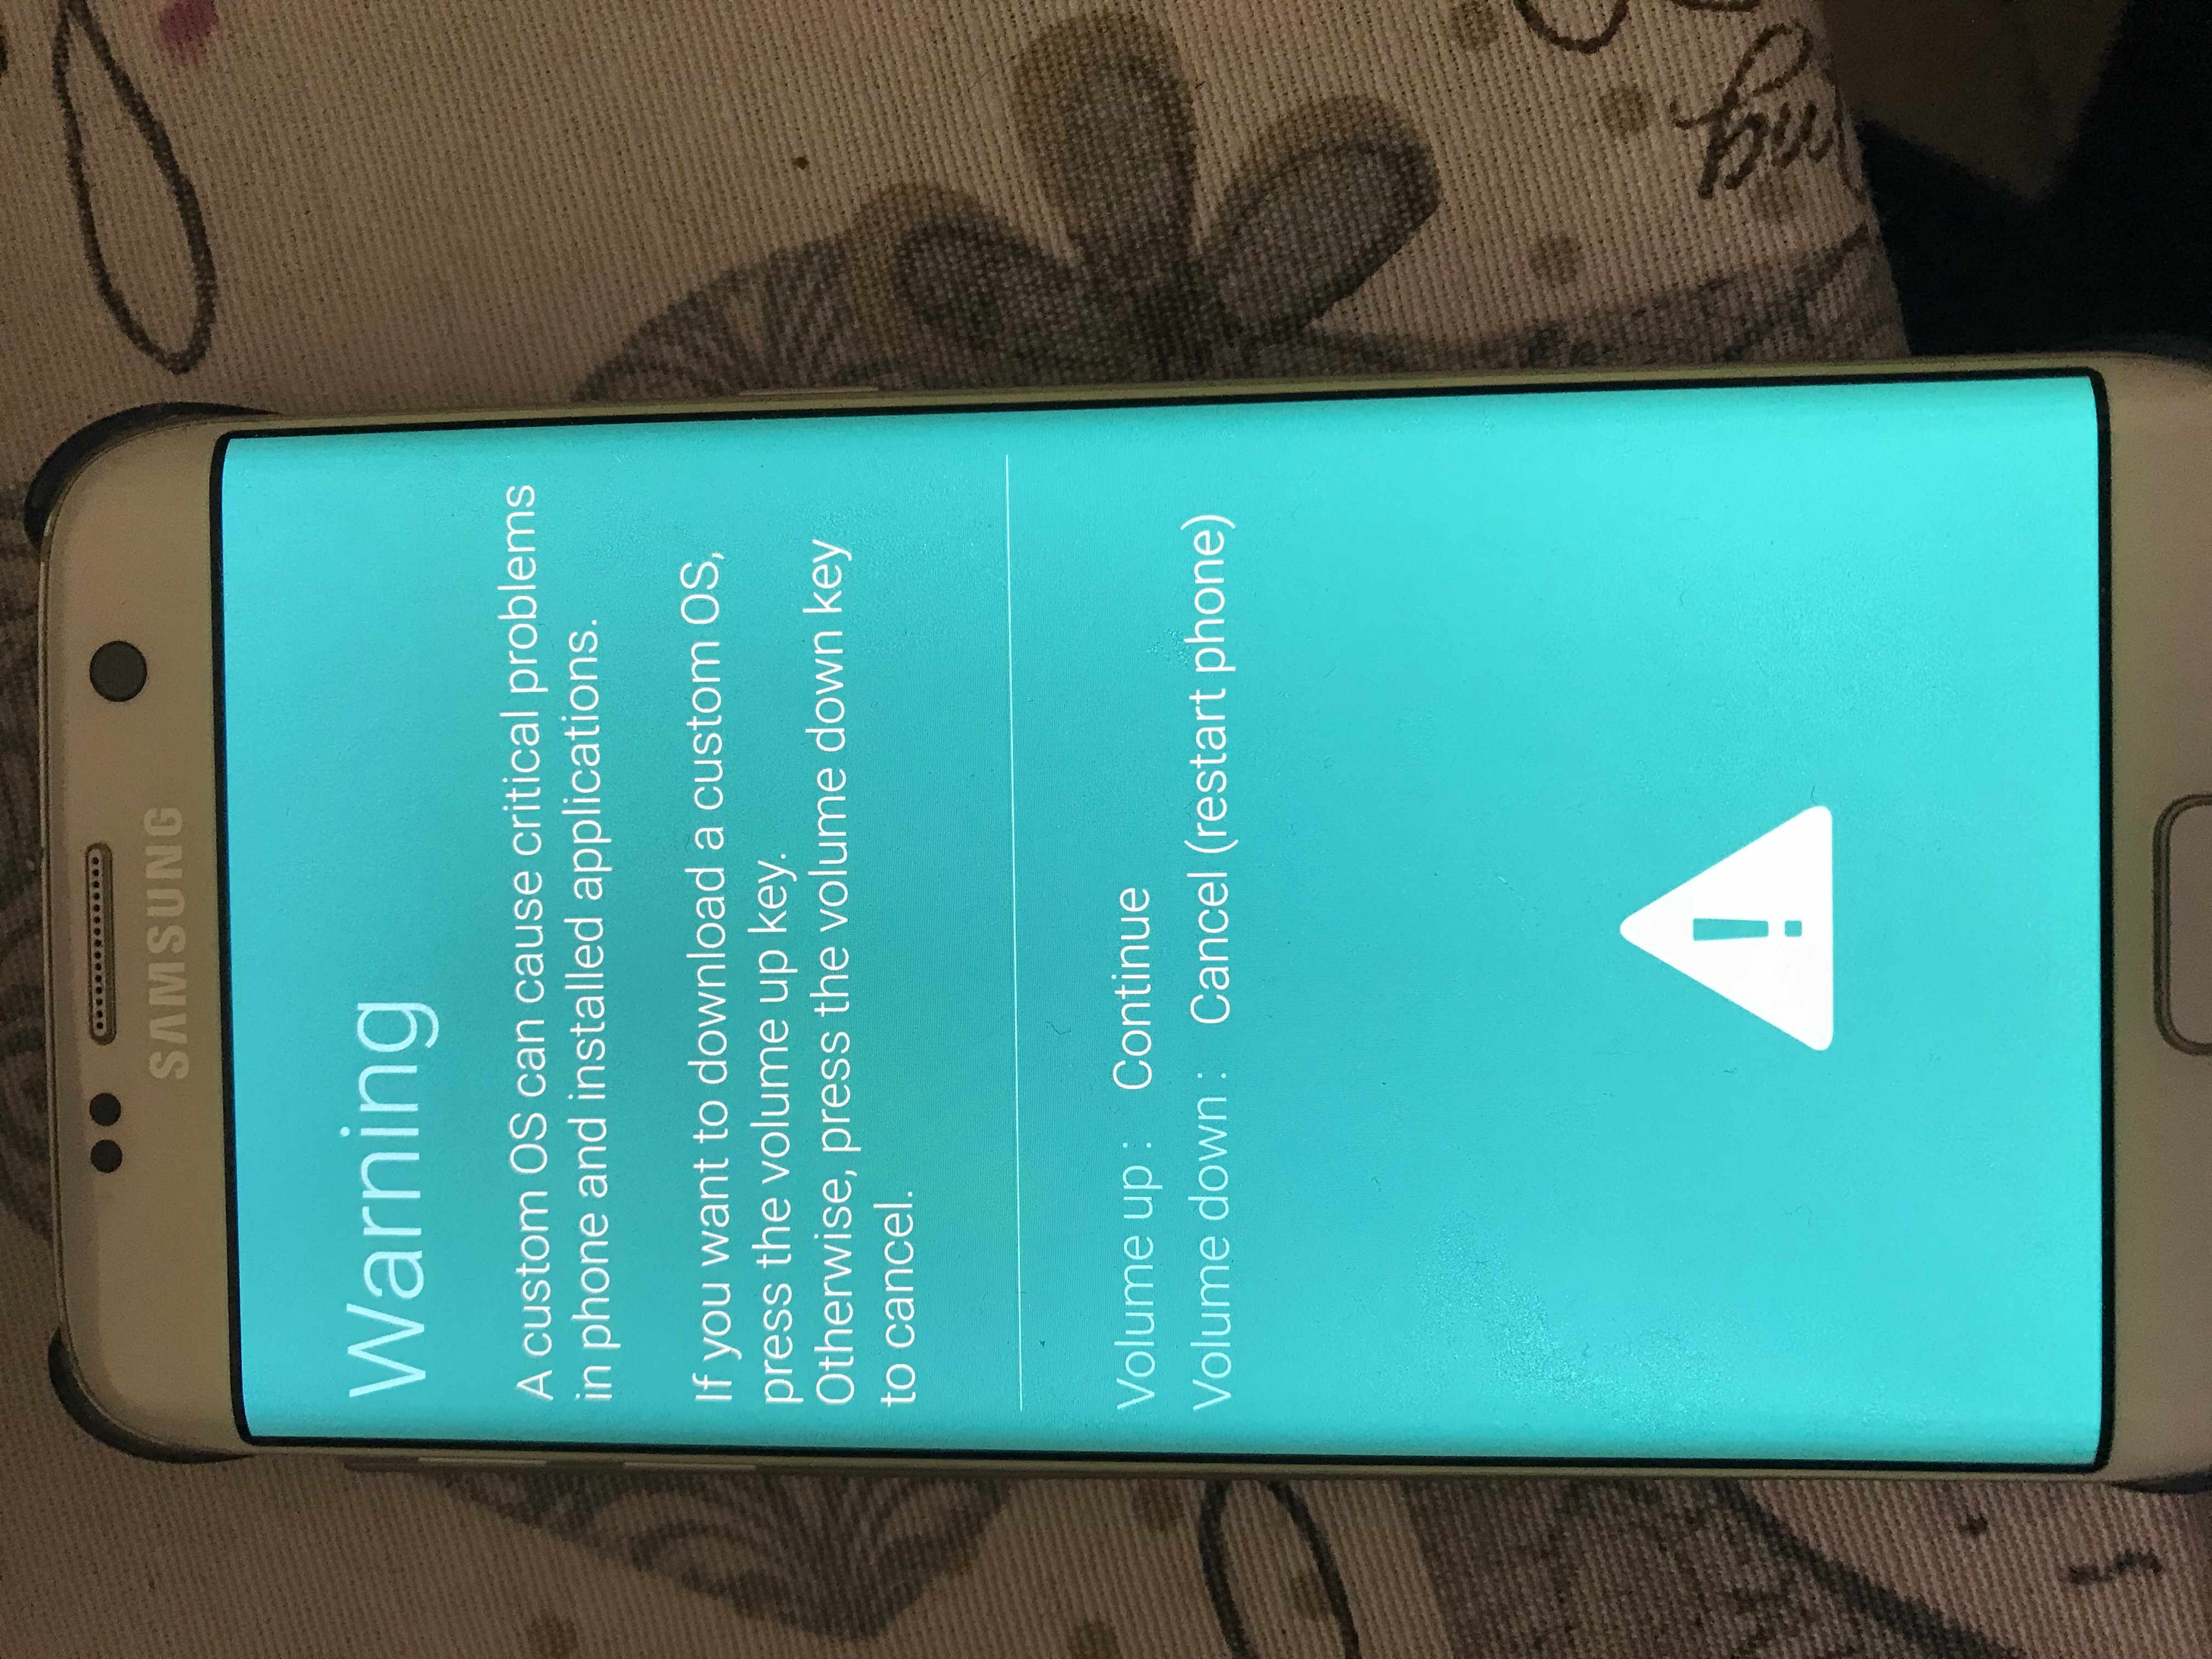 Galaxy S7 Edge Bloccato dopo aggiornamento - Samsung Community